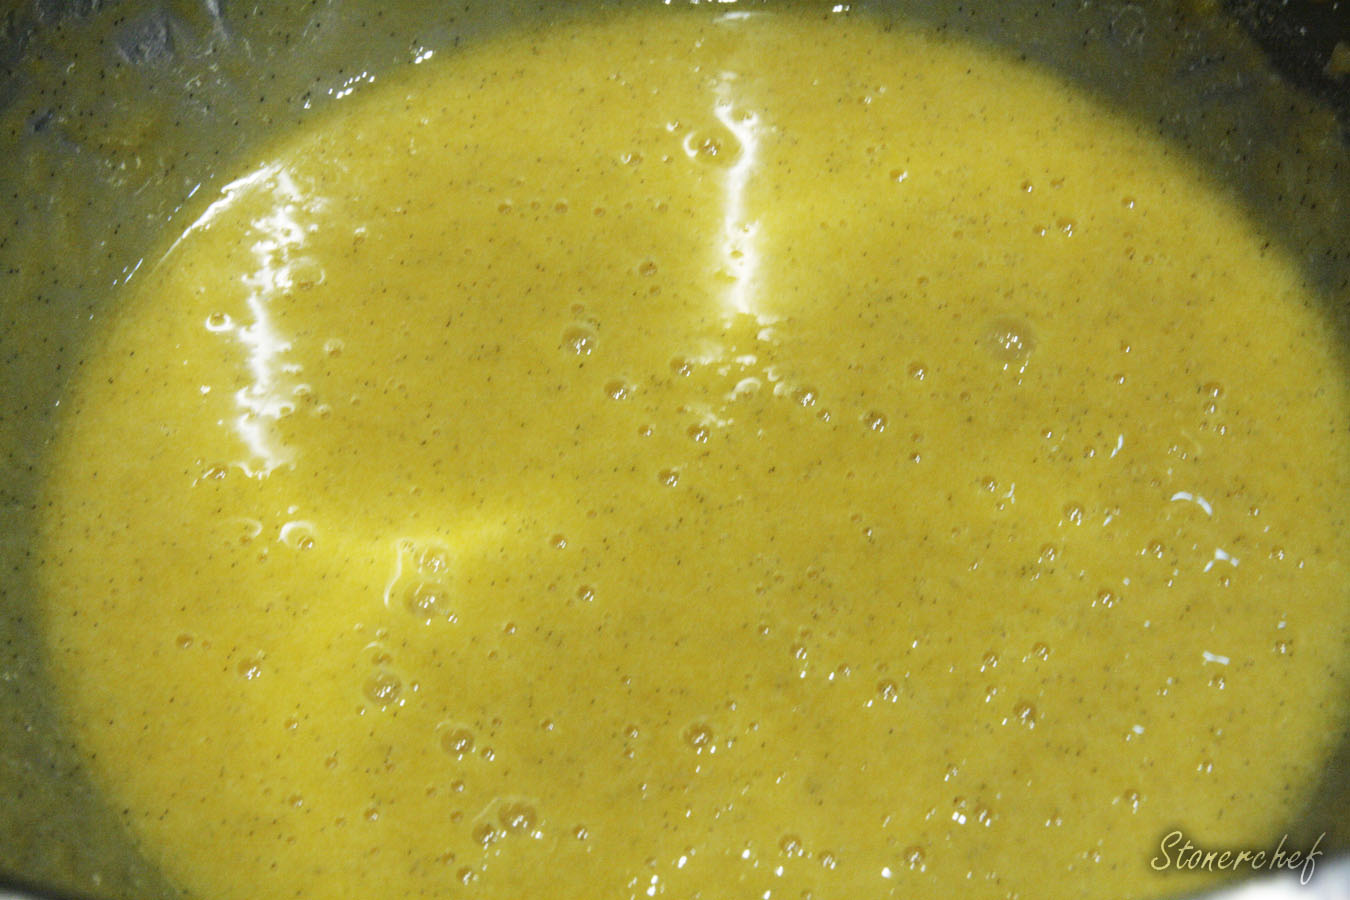 żółtka rozrobione z cukrem pudrem i wanilią